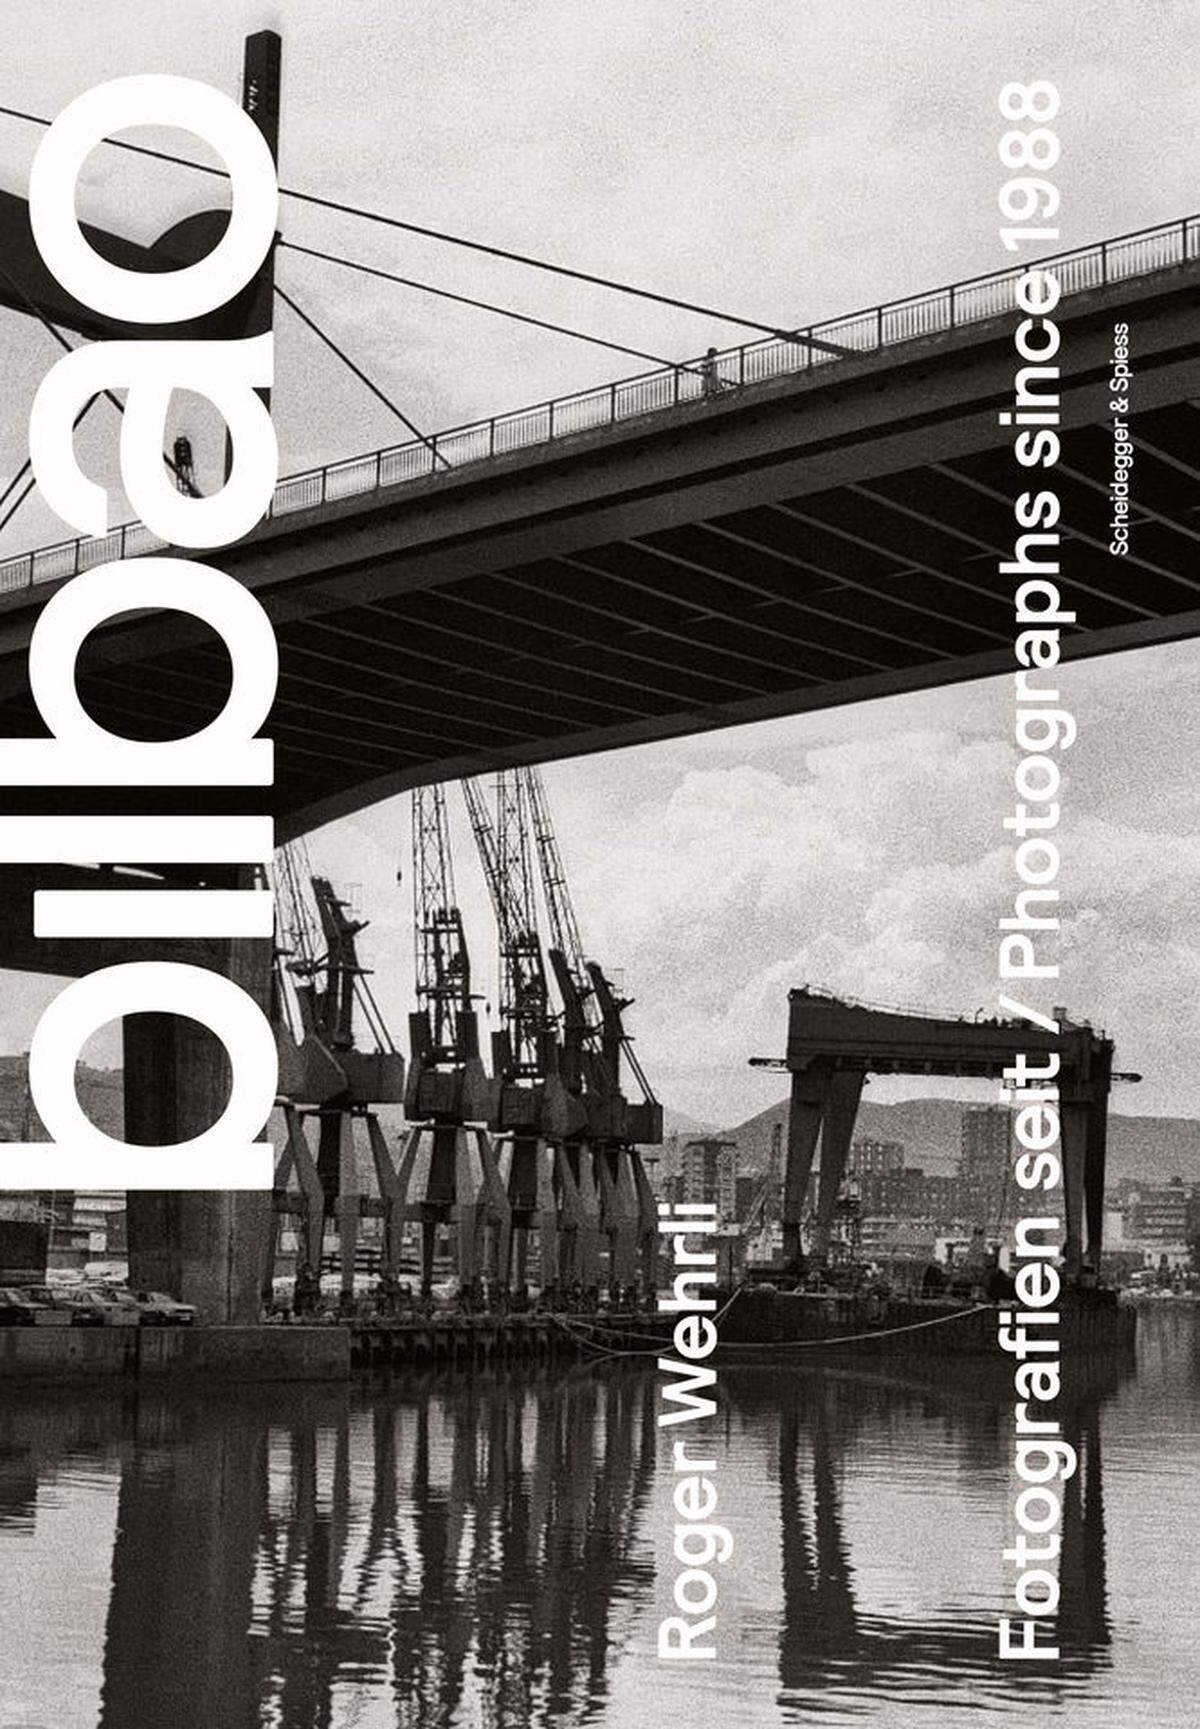 Roger Wehrlis Fotos sind in dem gerade erschienenen Bildband "Bilbao. Fotografien seit 1988 - Vom Indurstriemoloch zur Kulturhauptstadt - die Geschichte eines urbanen Wandels" zusammengefasst. Verlag: Scheidegger & Spiess. Ca. 40 Euro. www.scheidegger-spiess.ch